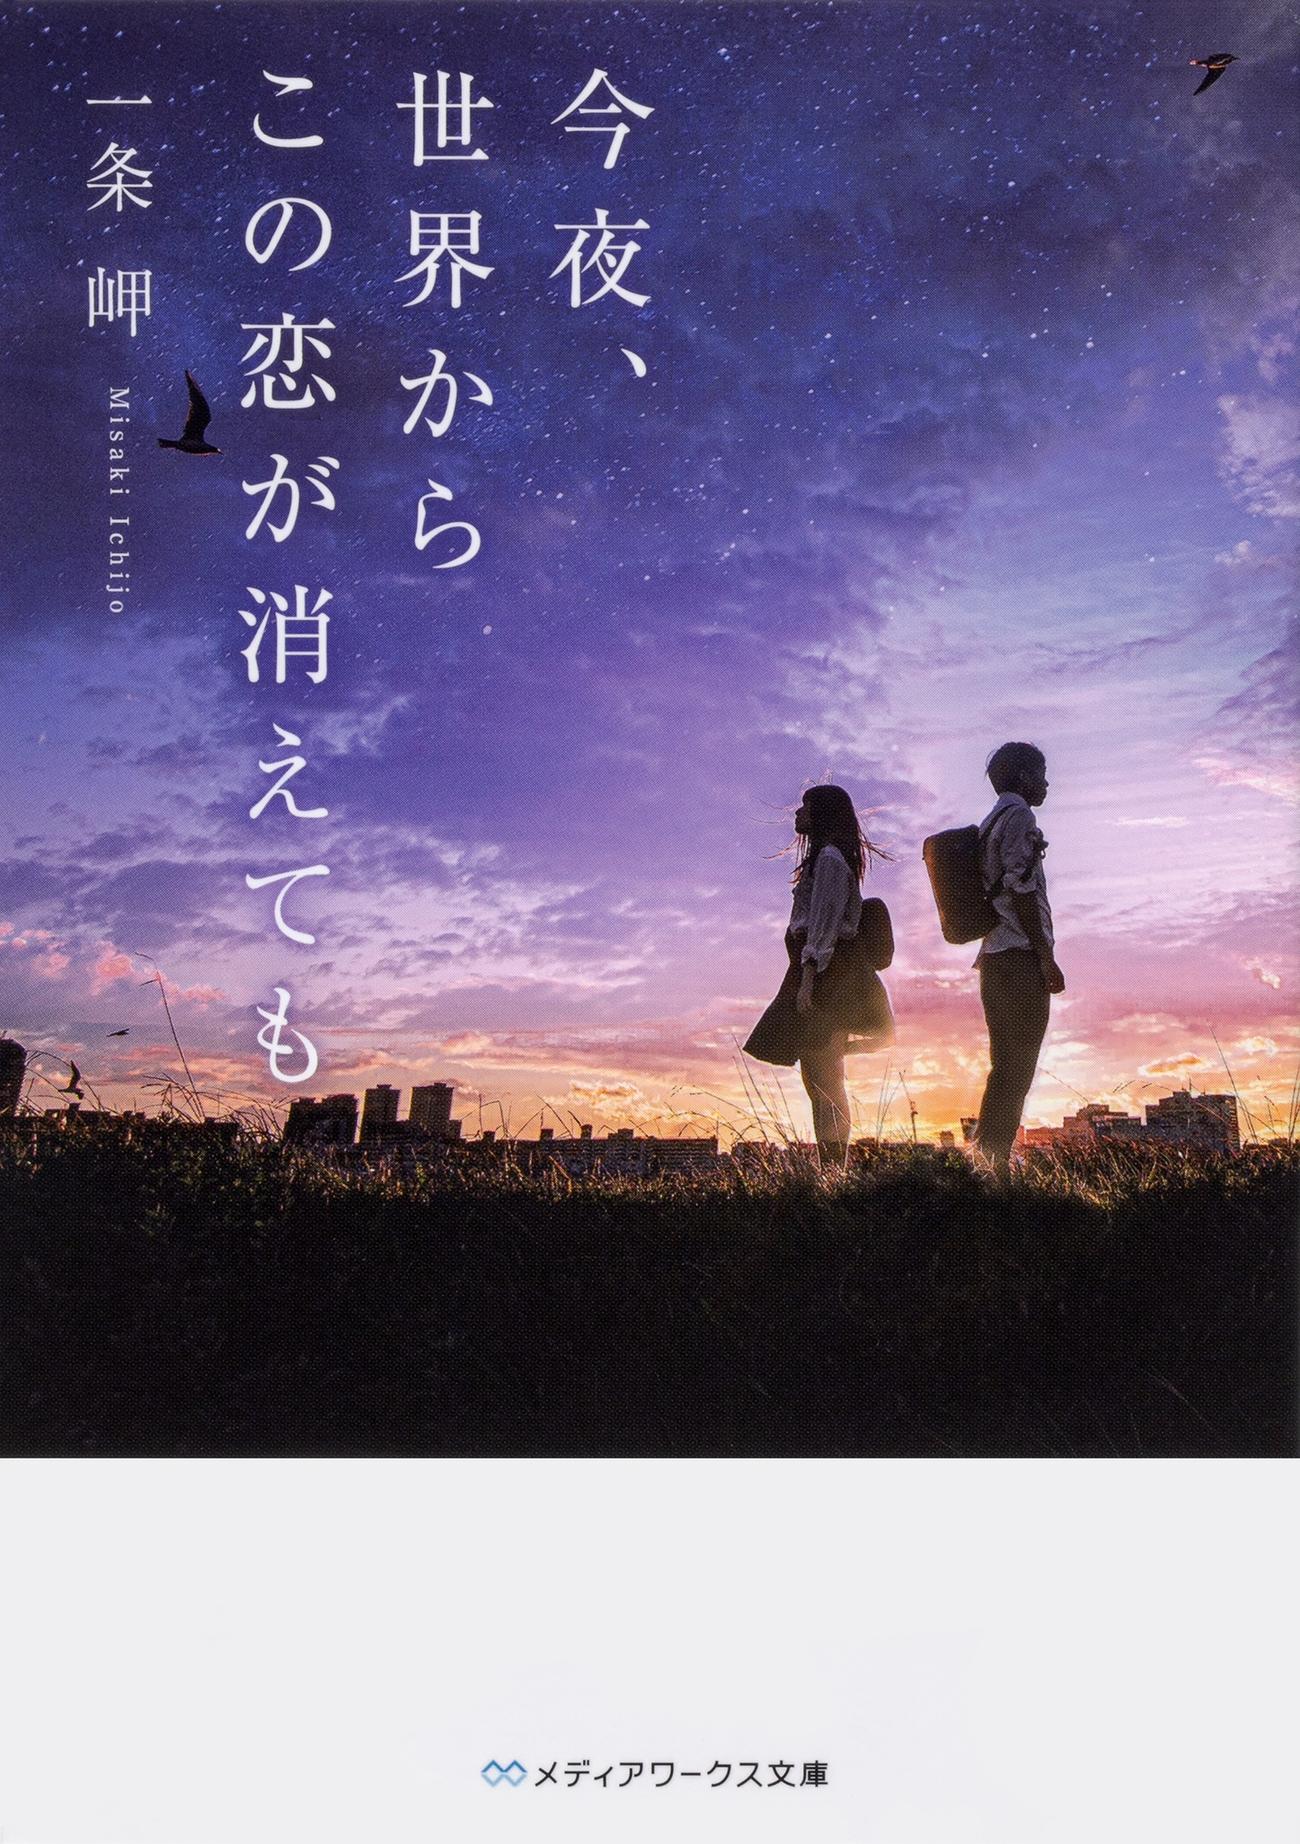 道枝駿佑と福本莉子がダブル主演する映画「今夜、世界からこの恋が消えても」の原作小説